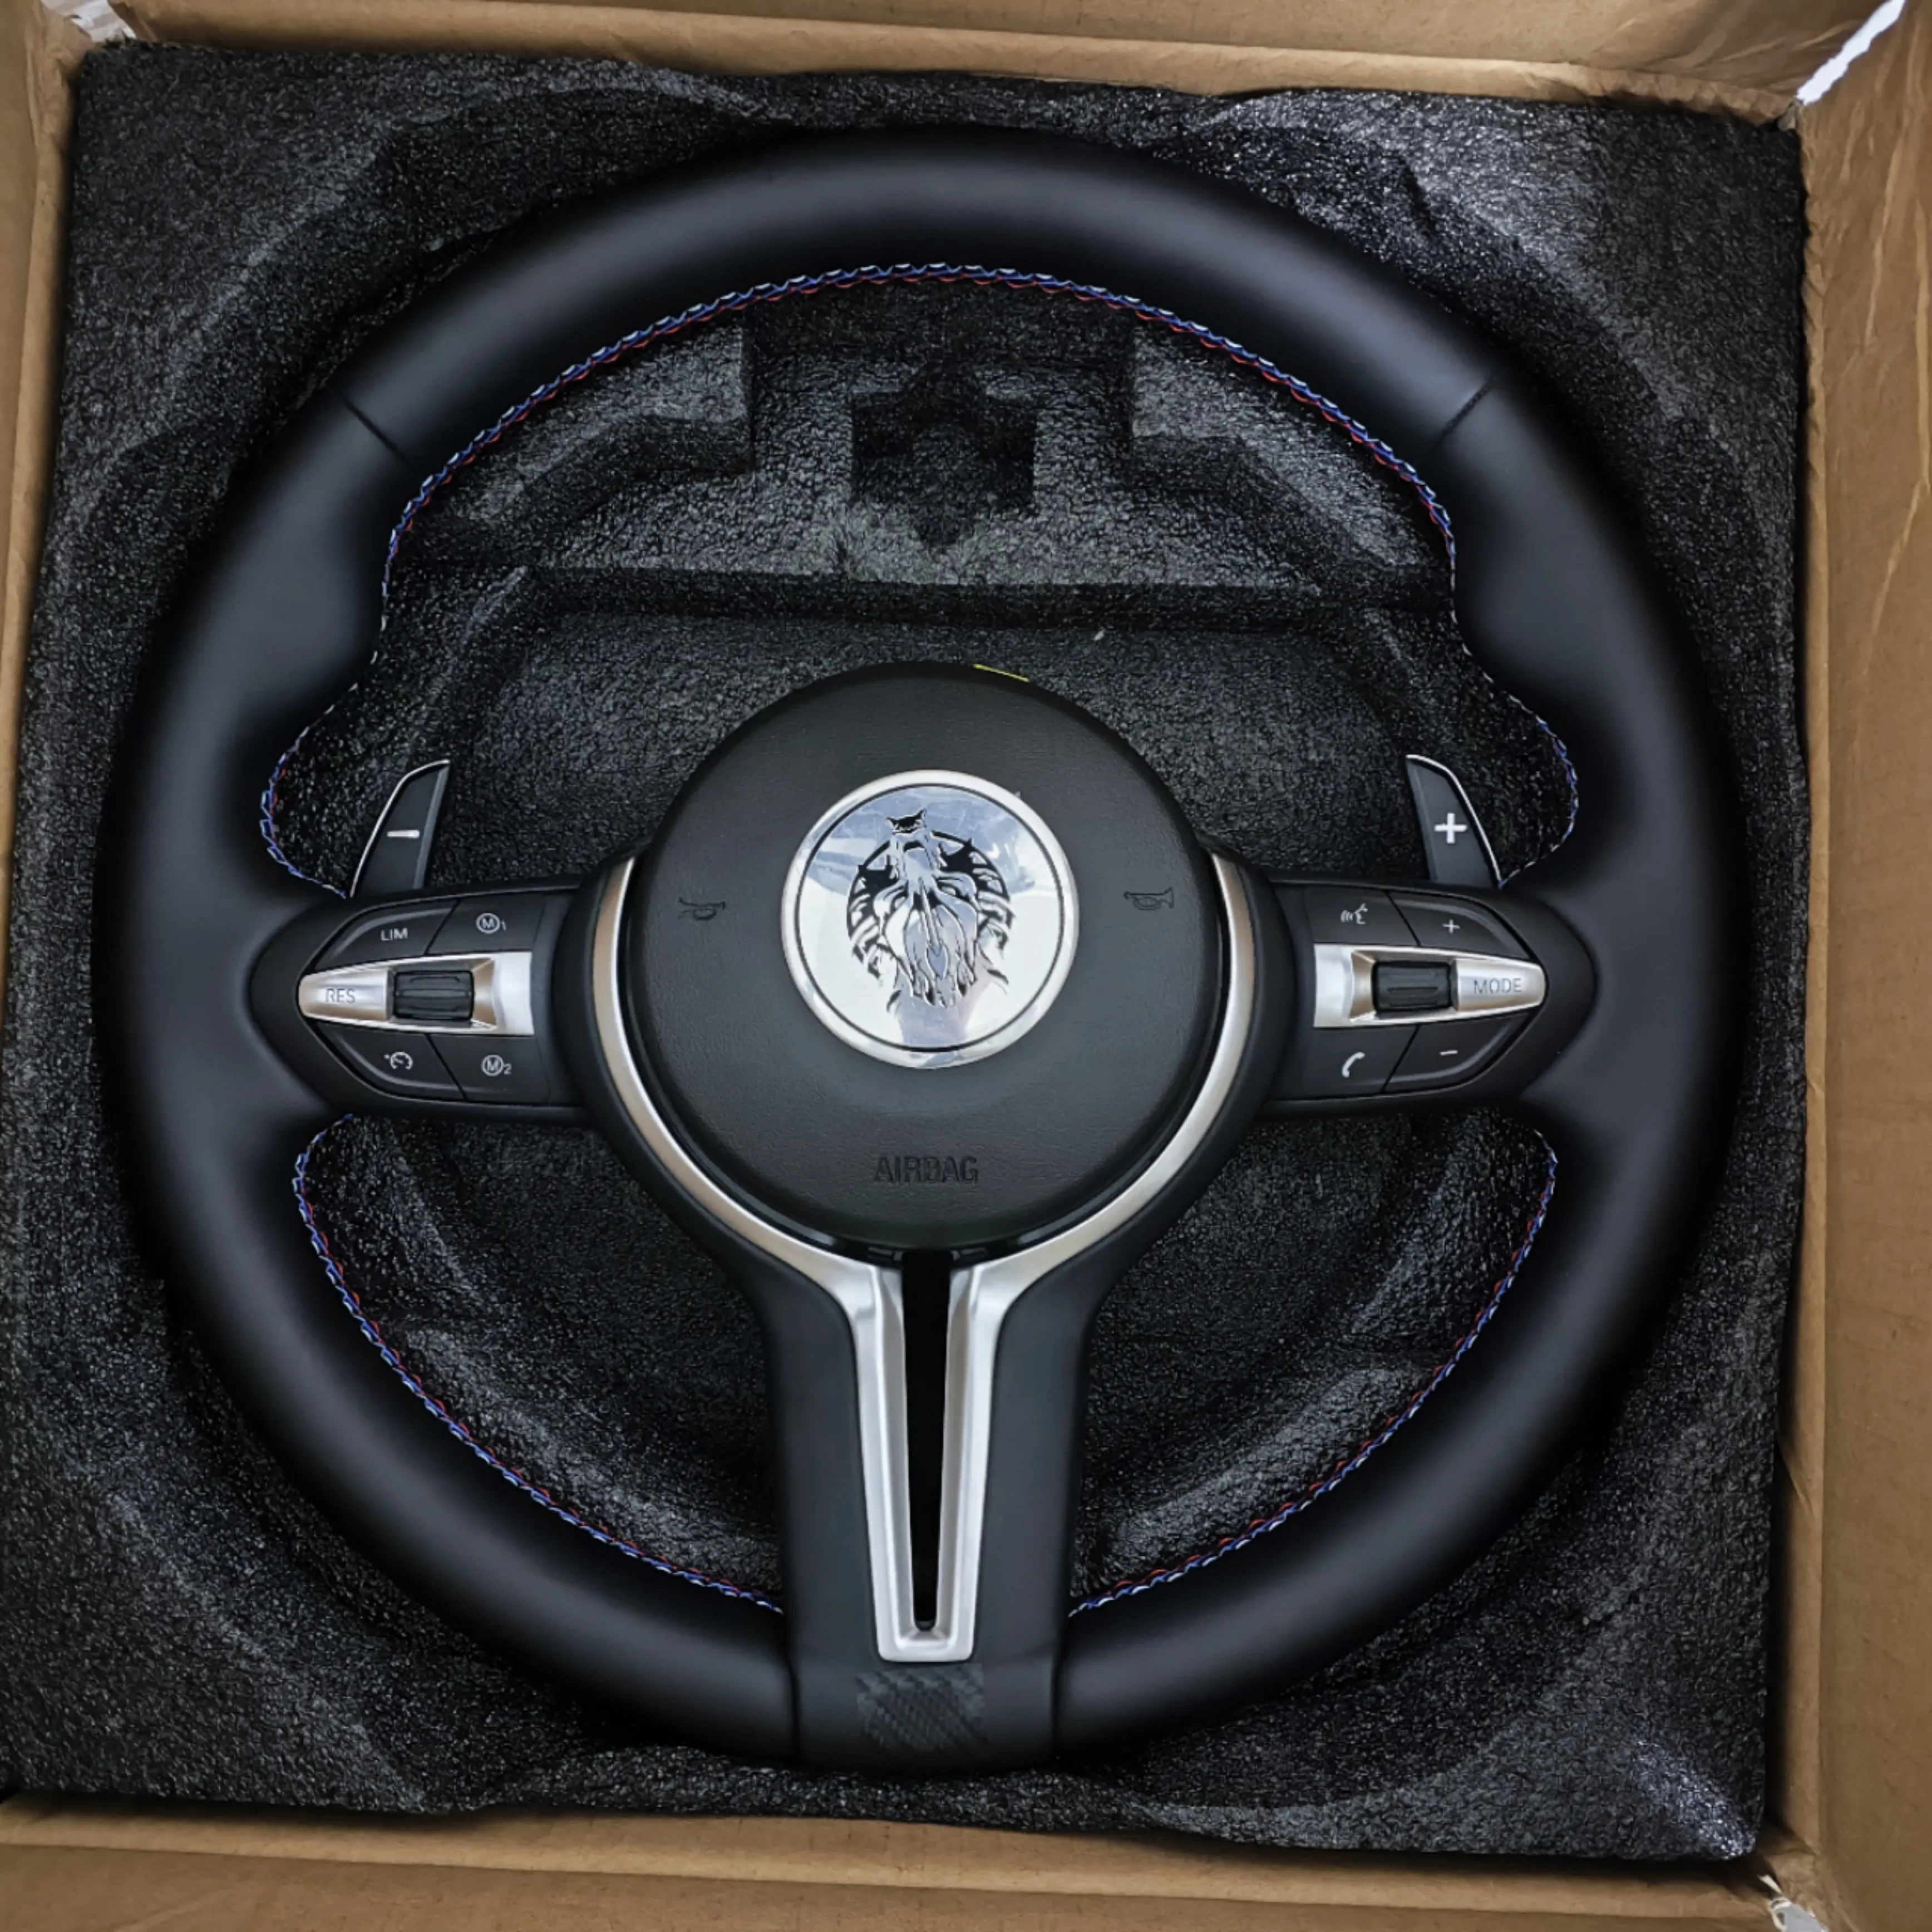 Roda kemudi kulit, roda kemudi serat karbon LED cocok untuk BMW F30 F32 F10 F20 F07 F01 E46 E60 E90 M3 M4 M5 M7